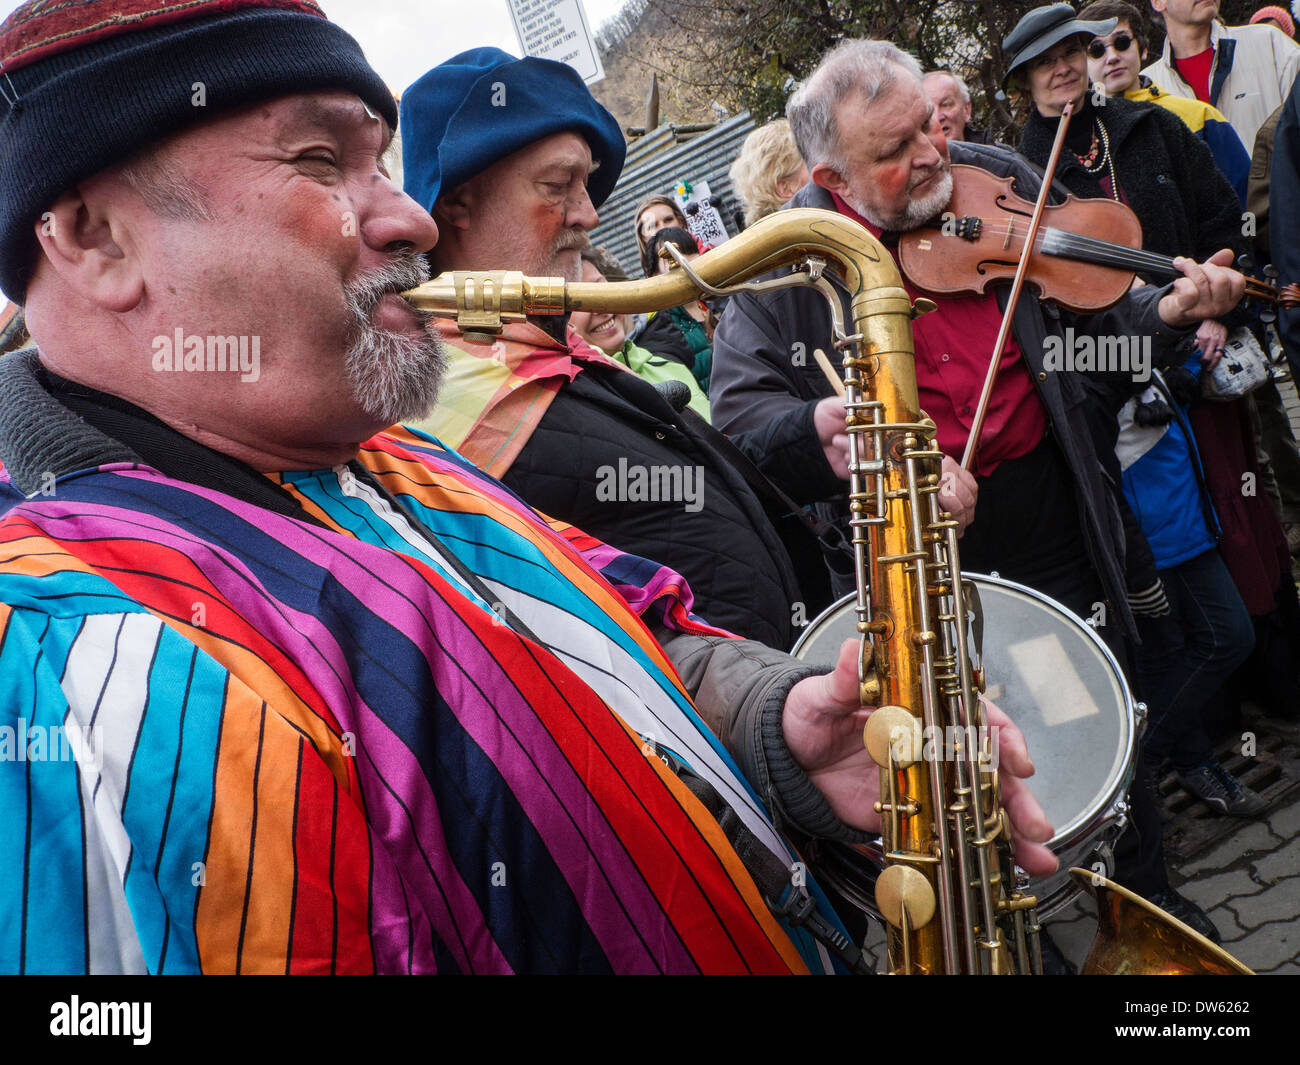 Czechs celebrate carnival in Mokropsy, Czech Republic Stock Photo